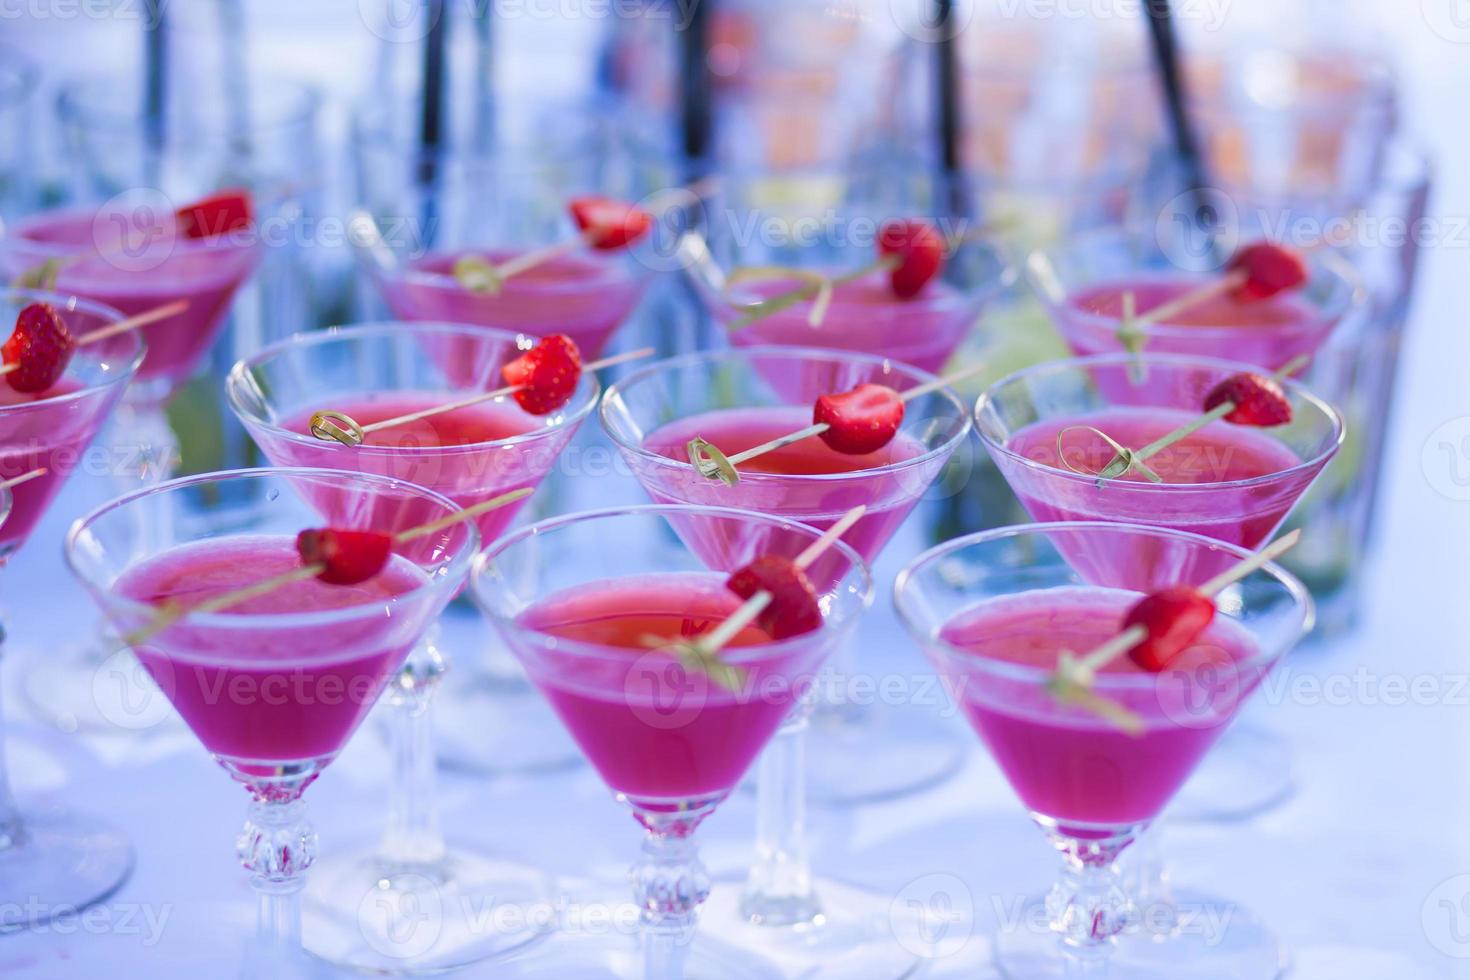 Reihe von verschiedenen Alkohol-Cocktails auf Event Open-Air-Nachtparty foto